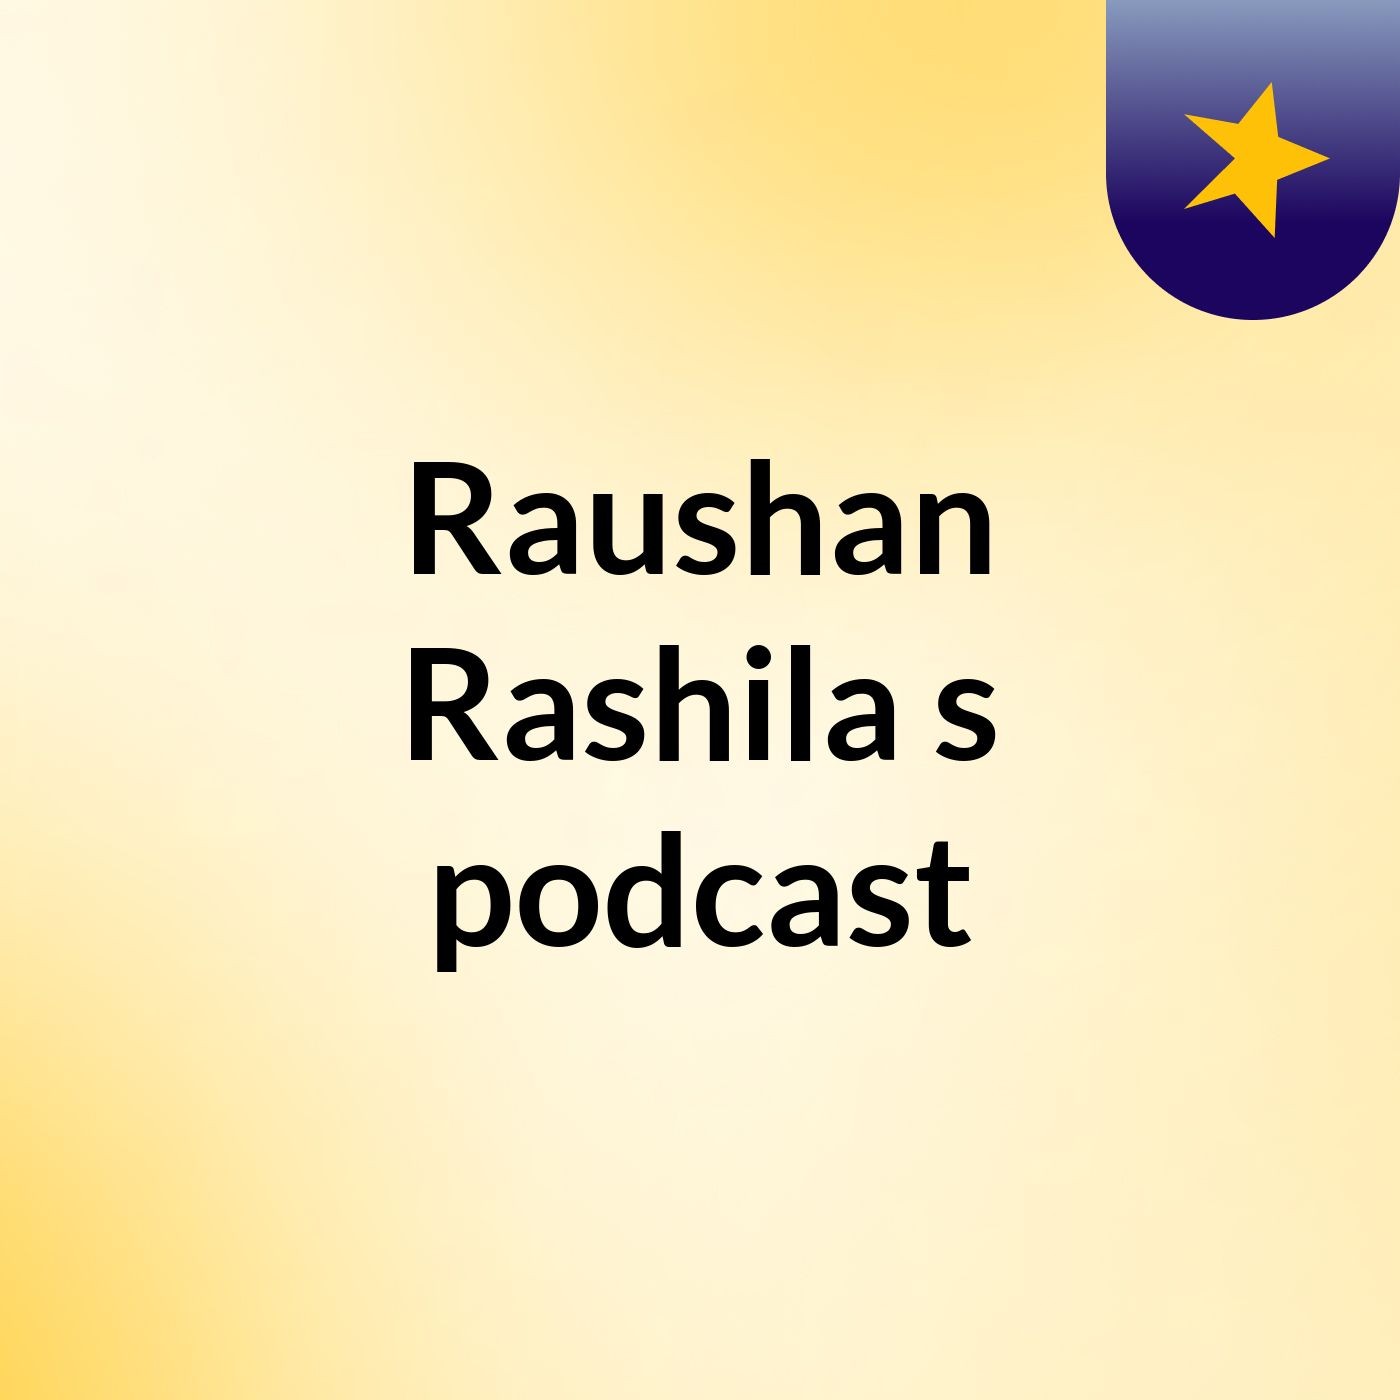 Raushan Rashila's podcast